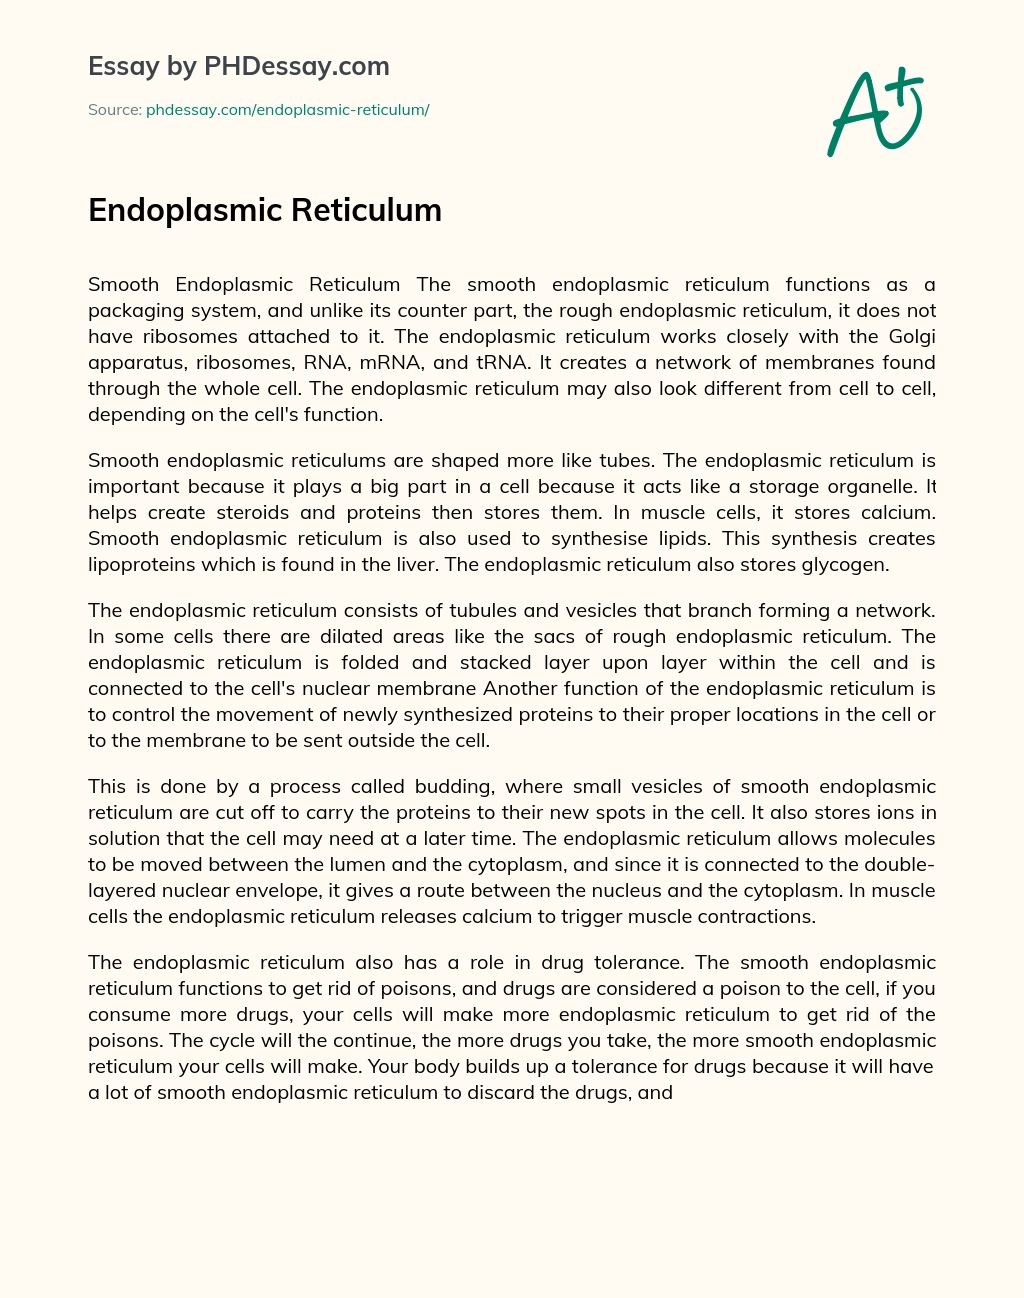 Endoplasmic Reticulum essay